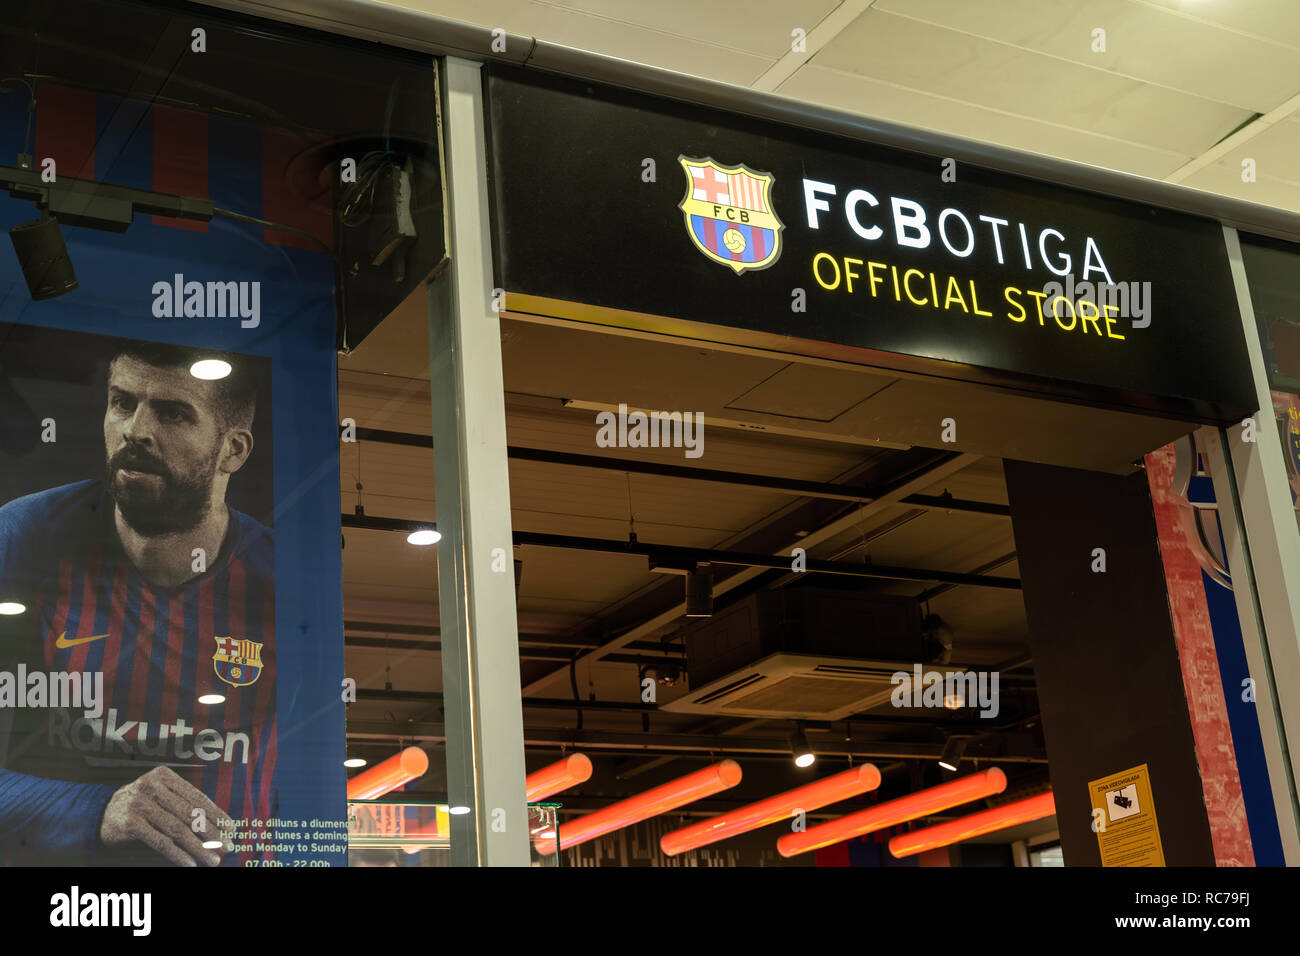 Entrée de la botiga fc magasin de l'équipe de football du FC Barcelone avec une affiche par Gerard Piqué dans la vitrine. Logo fc barcelone, ​​Spain Banque D'Images